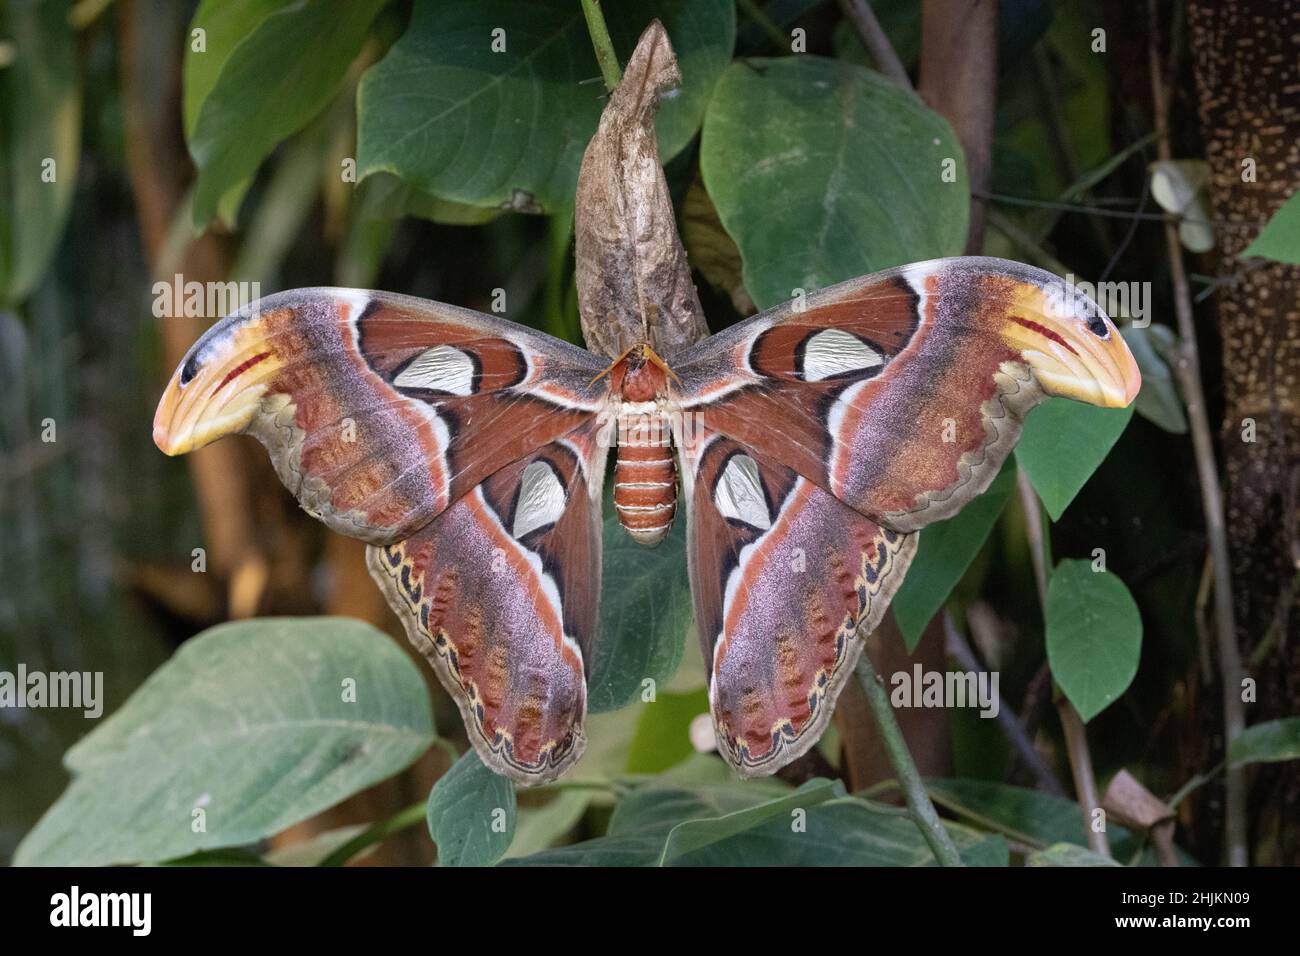 Nahaufnahme eines Atlasspinners in der Allgäuer Schmetterling Erlebniswelt, einem Schmetterlingspark mit Gewächshäusern voller bunter Insekten, ein Er Stock Photo